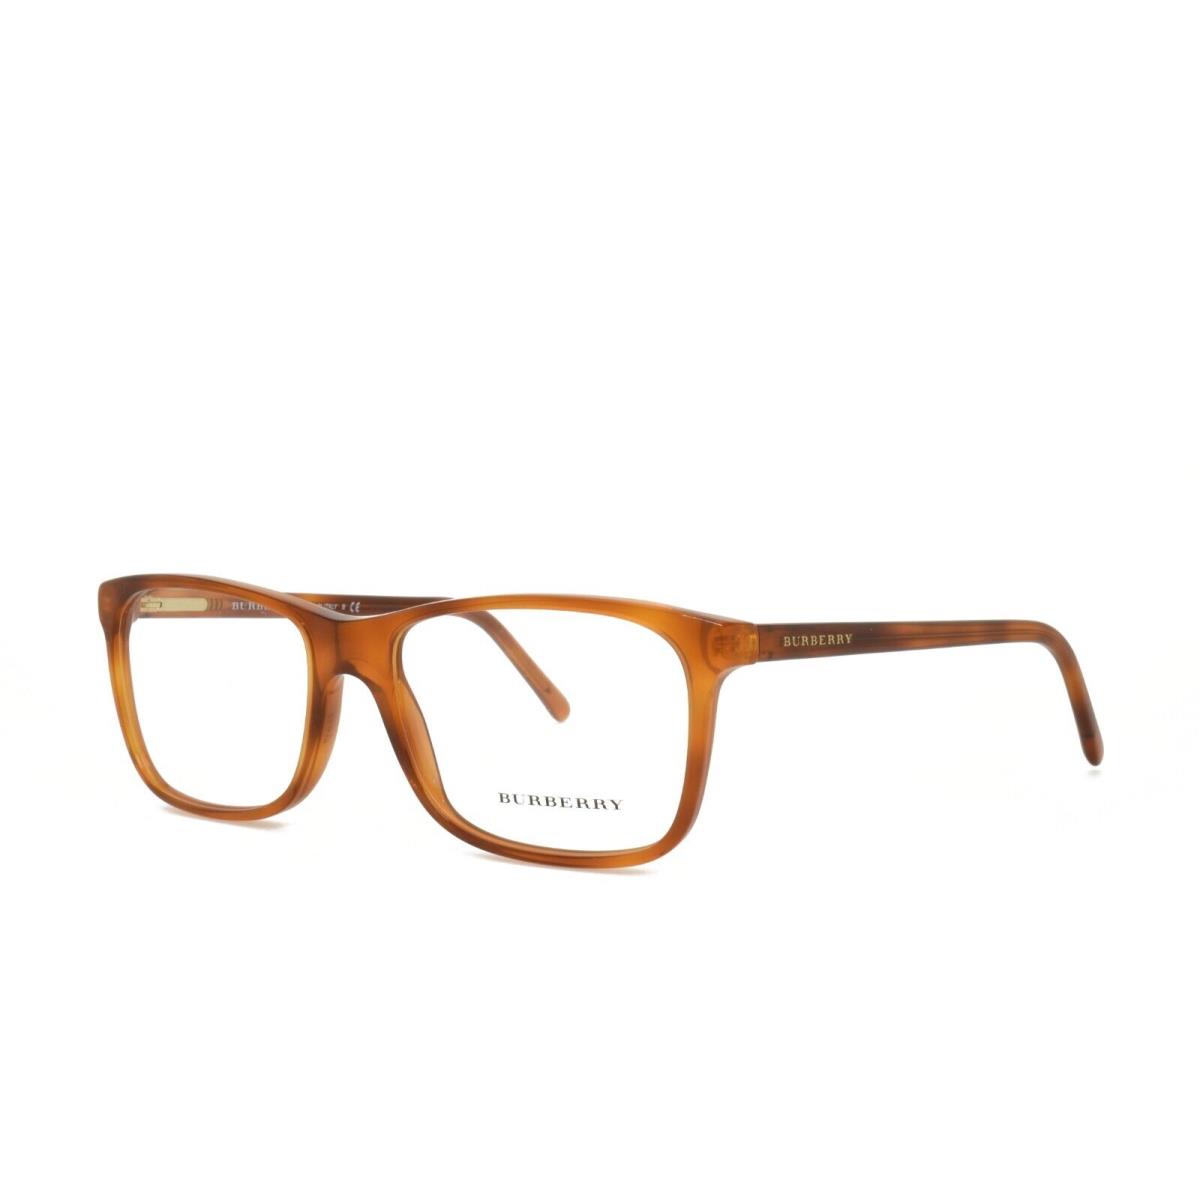 Burberry 2178 3487 55-17-140 Light Brown Eyeglasses Frames